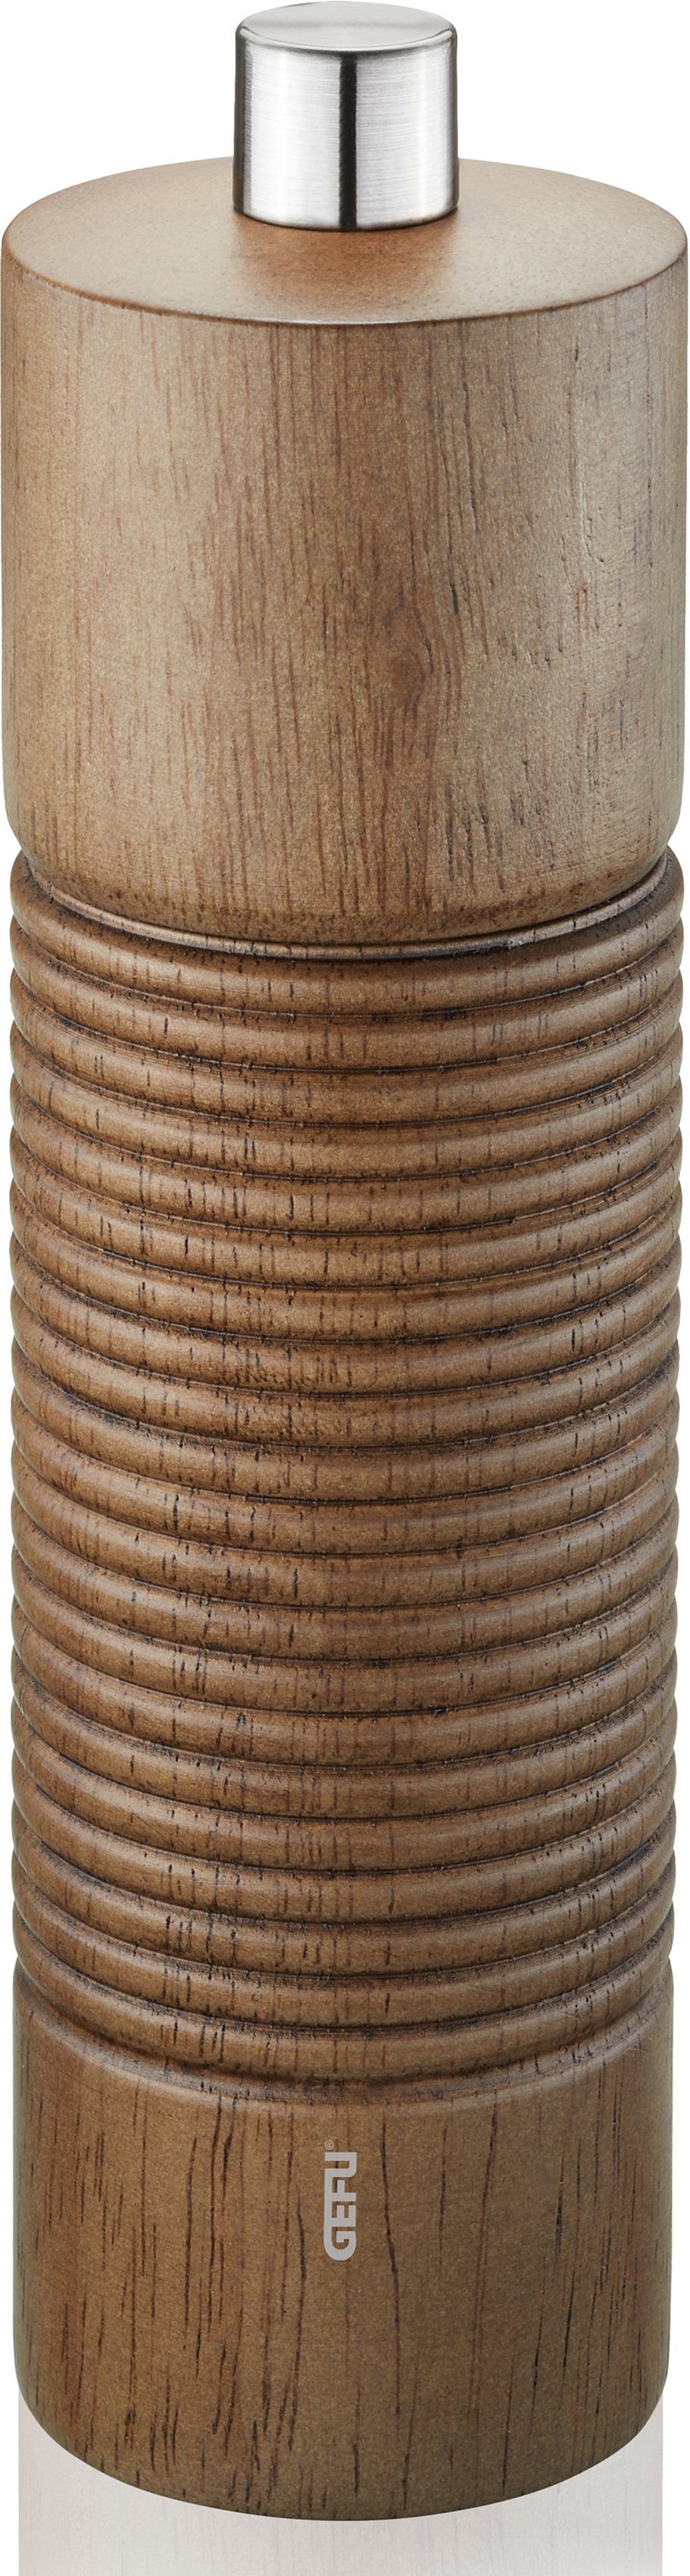 holzfarben/silberfarben Keramikmahlwerk TEDORO manuell, GEFU Salz-/Pfeffermühle stufenlos einstellbares